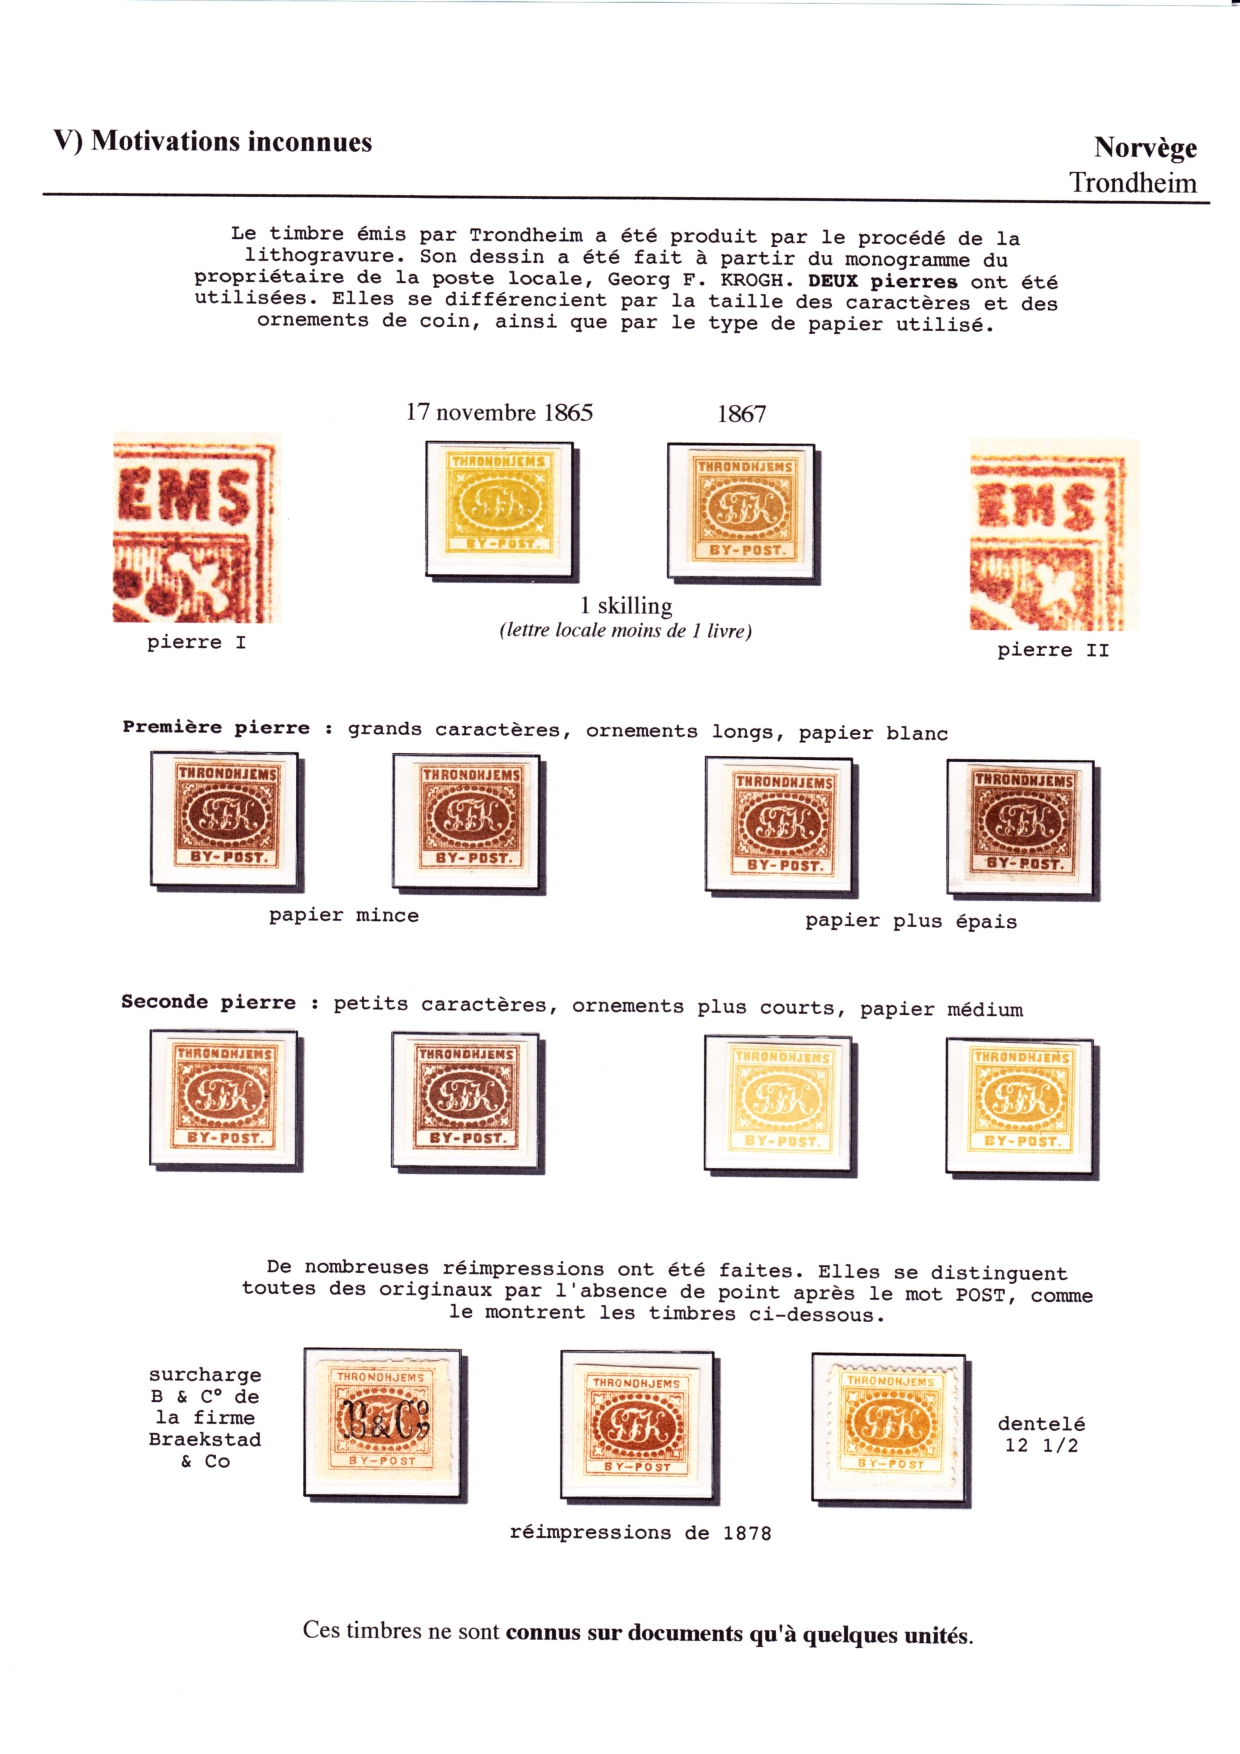 Les d��buts des timbres sans valeur faciale apparente p. 79